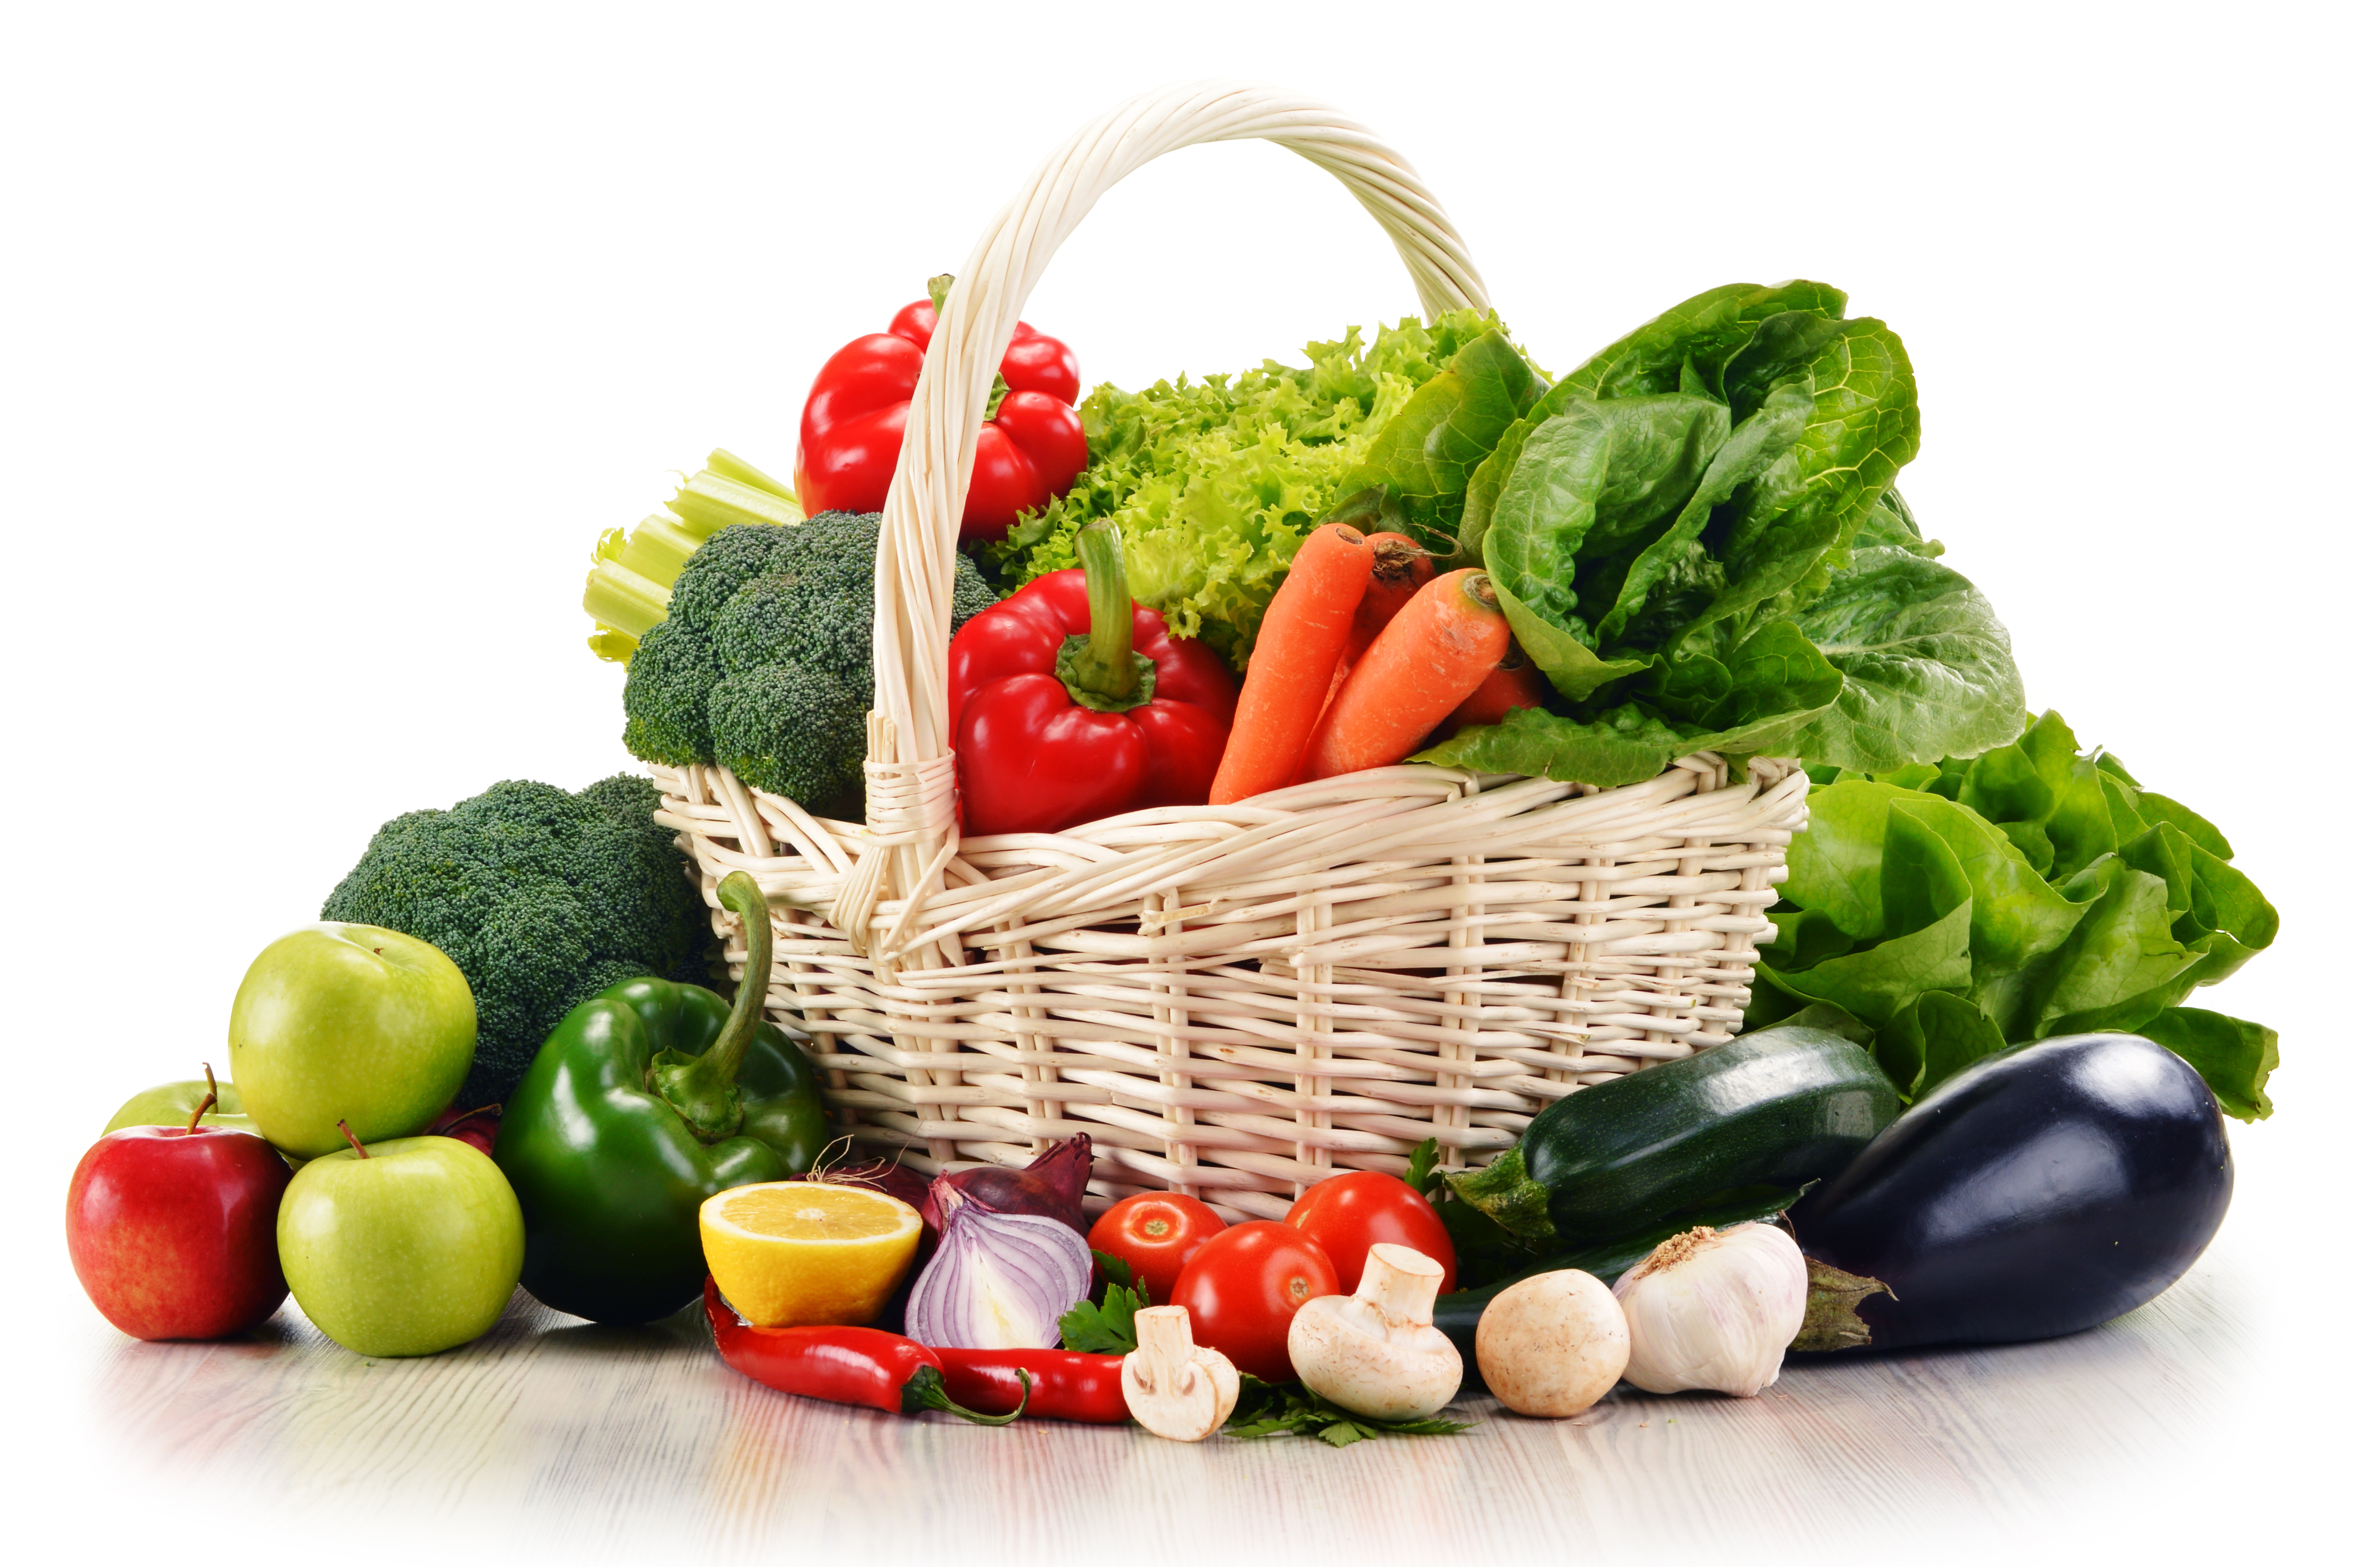 10 av de mest näringsrika och hälsosammaste grönsakerna du kan äta